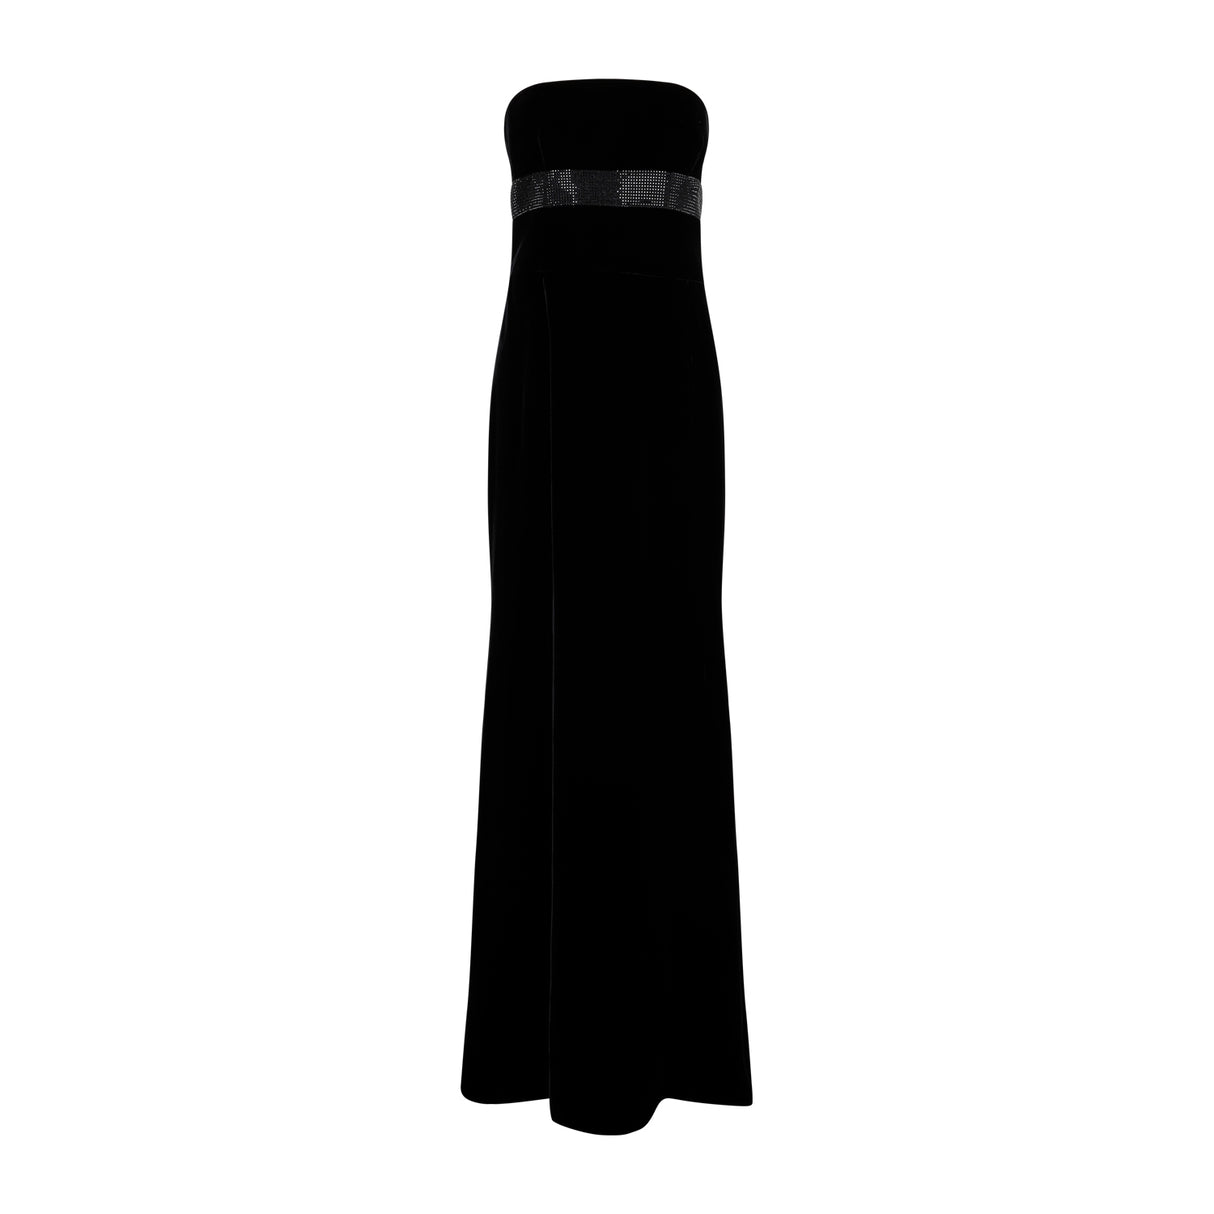 Đầm tay dài đen thời trang cho phụ nữ